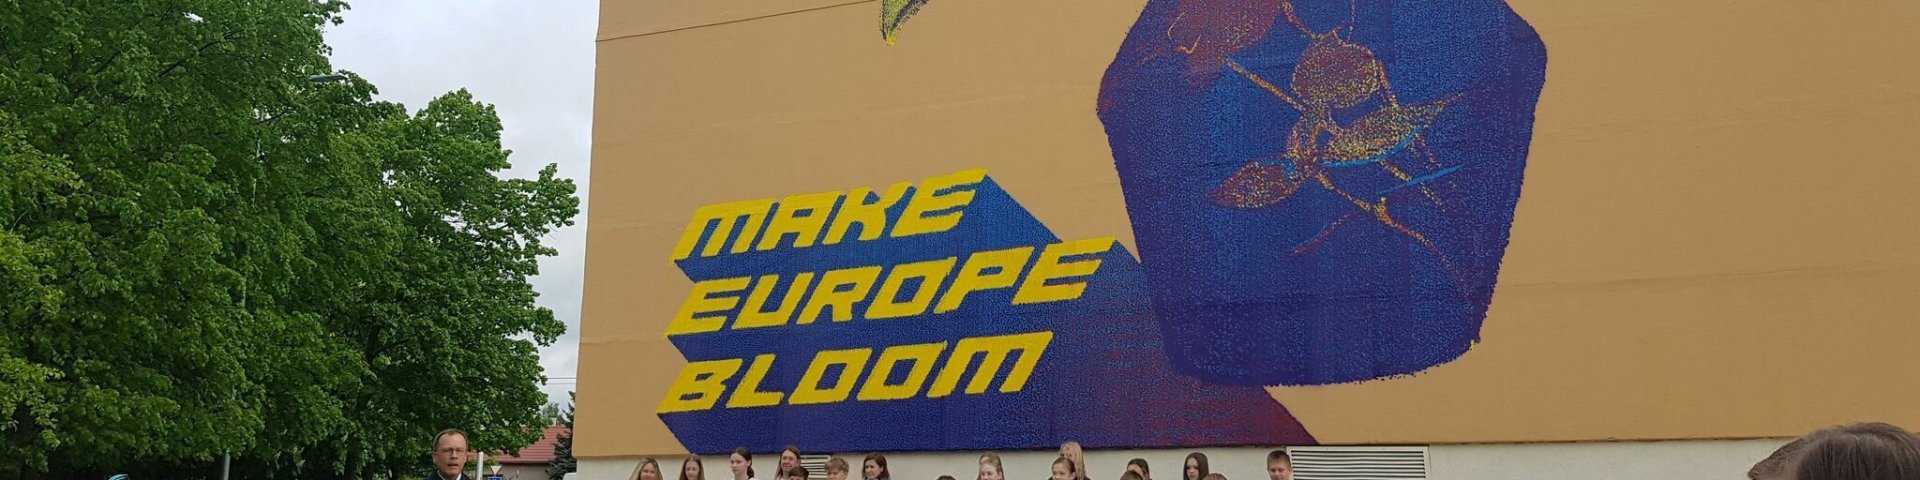 Make Europe Bloom - opening of the mural.jpg